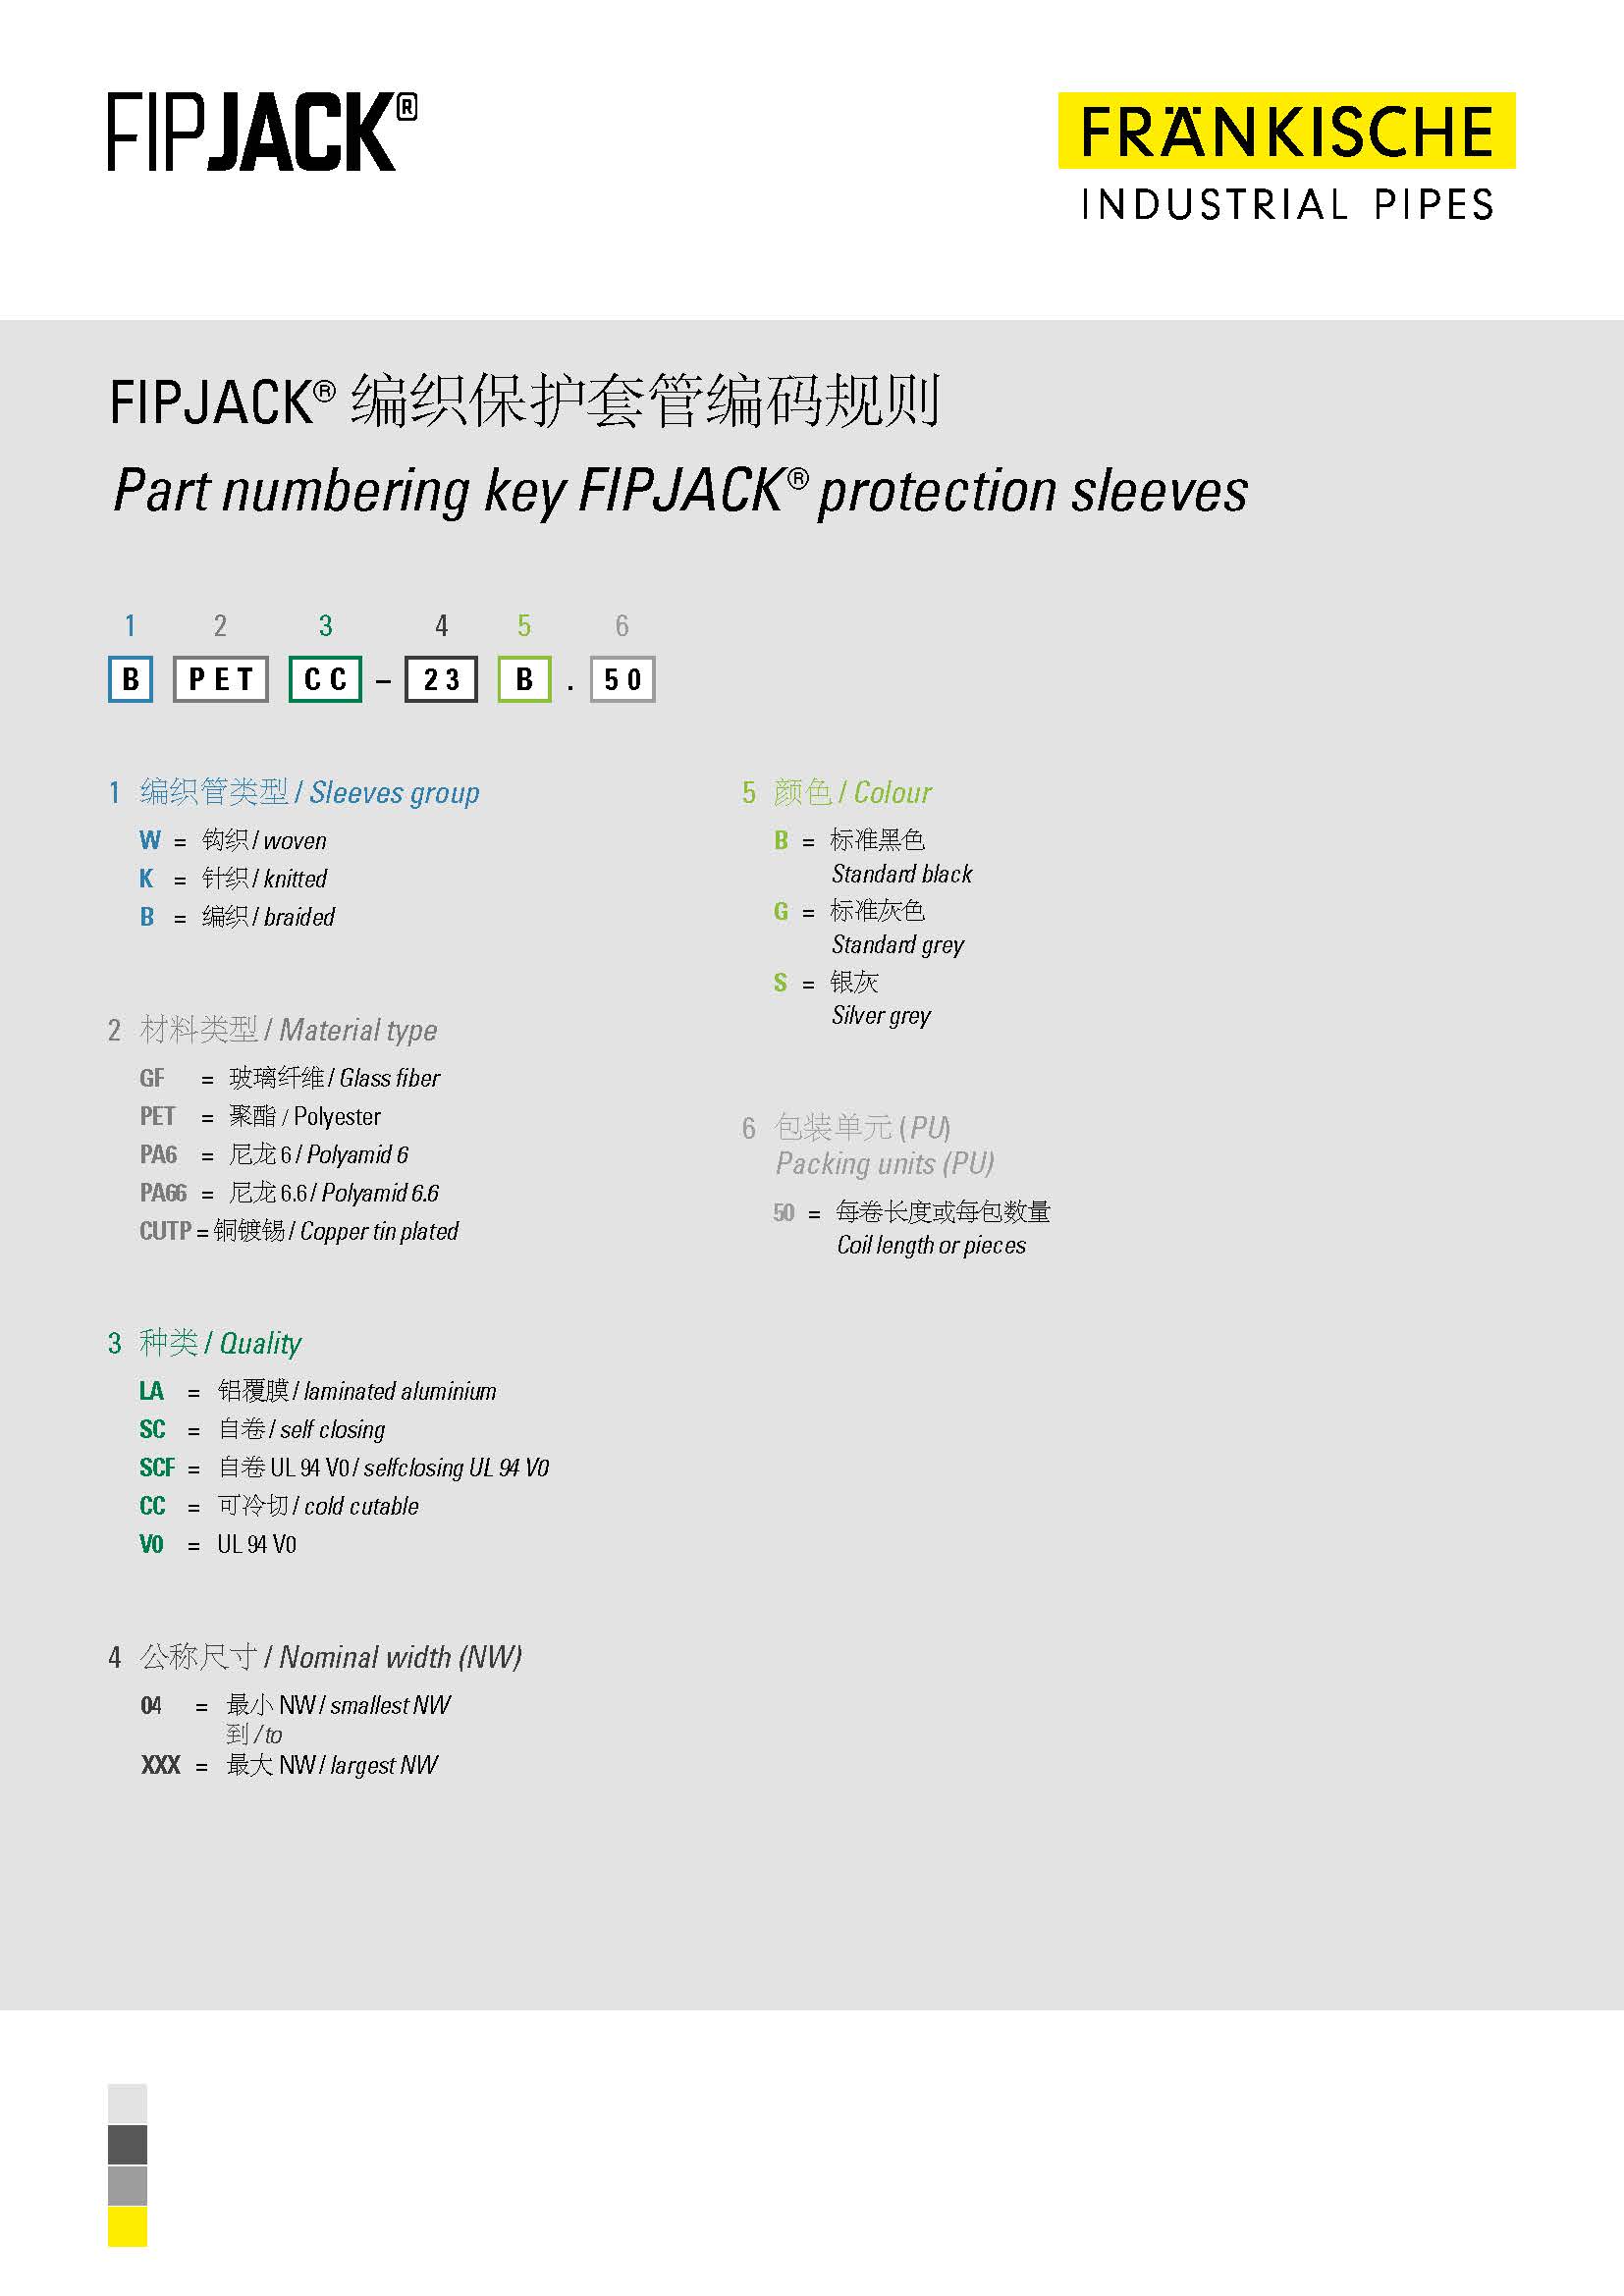 FIPJACK® 编织保护套管编码规则 (146 KB)